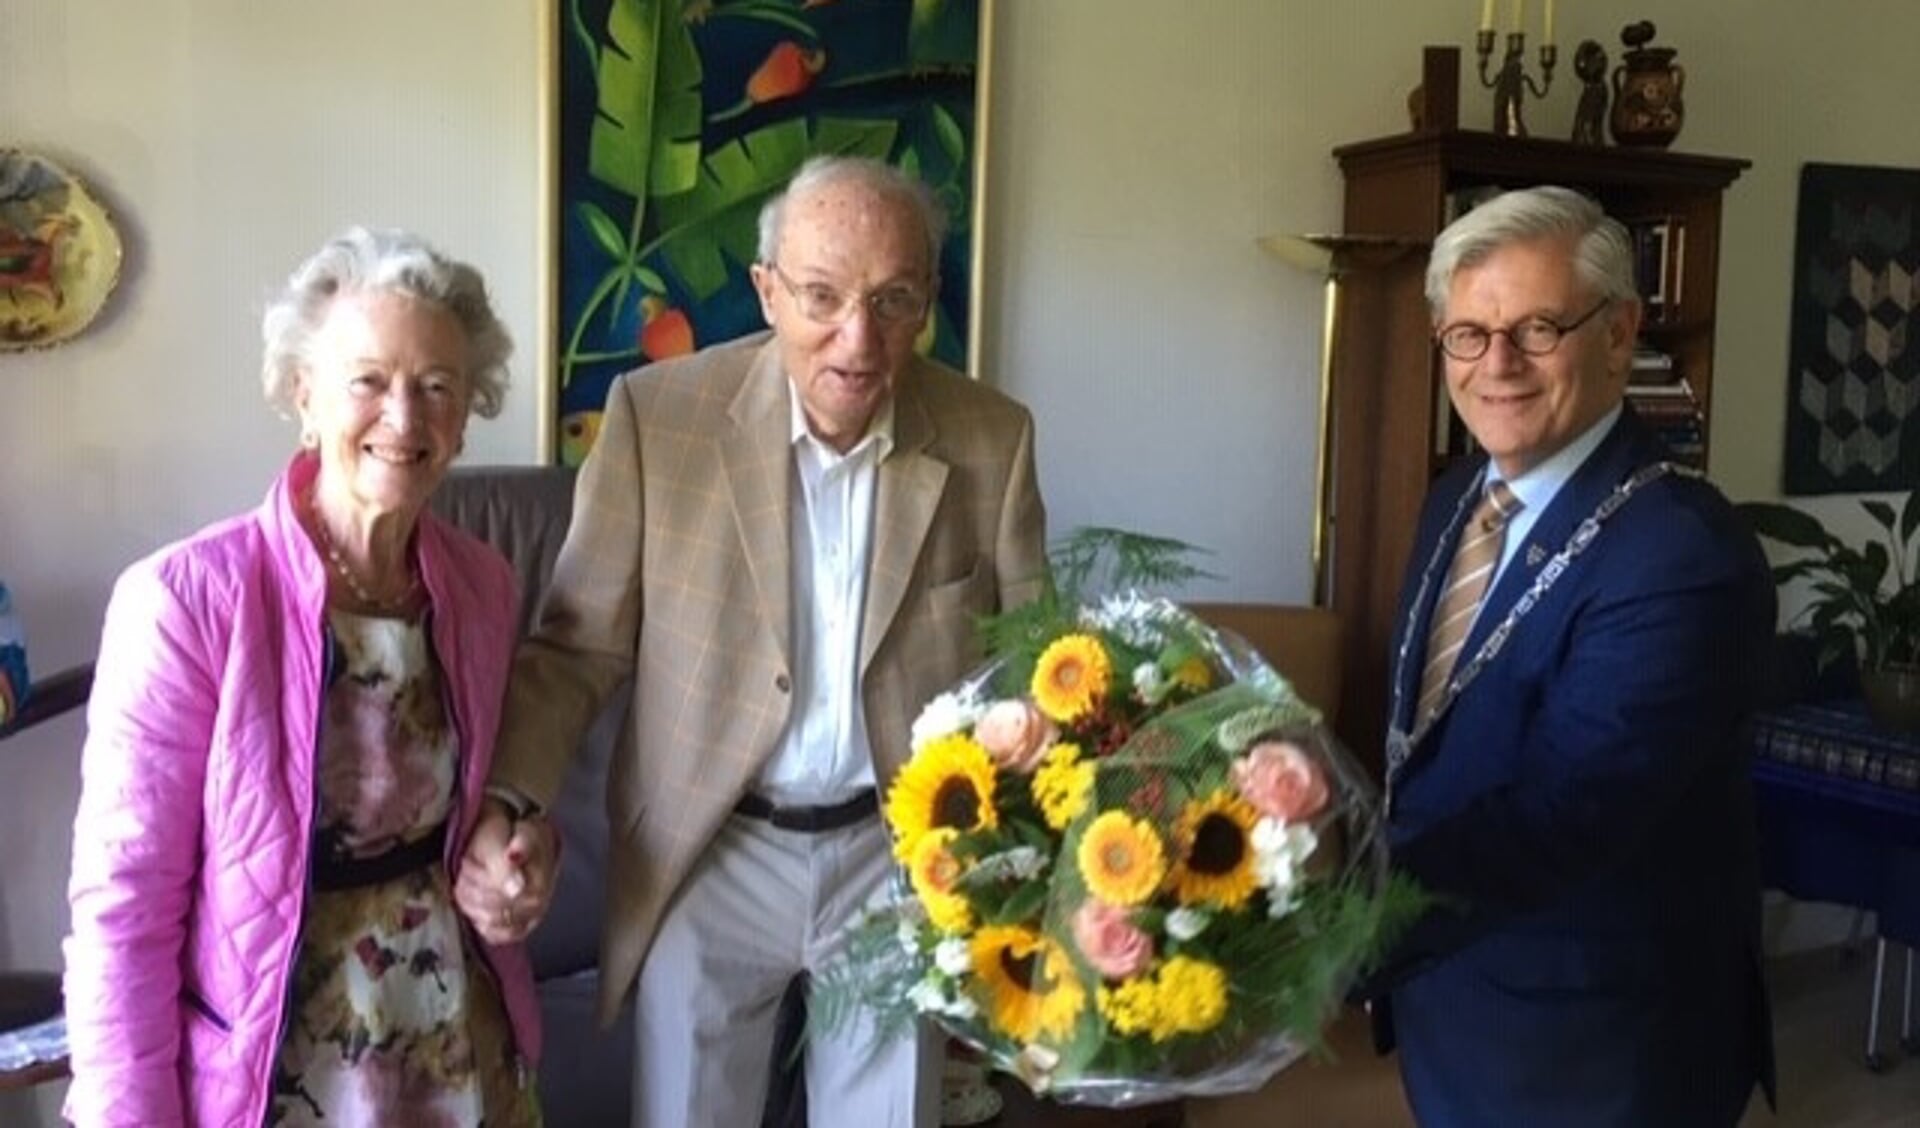 Burgemeester Aptroot kwam het echtpaar Hertogh-Zaat feliciteren met hun diamanten huwelijk. 